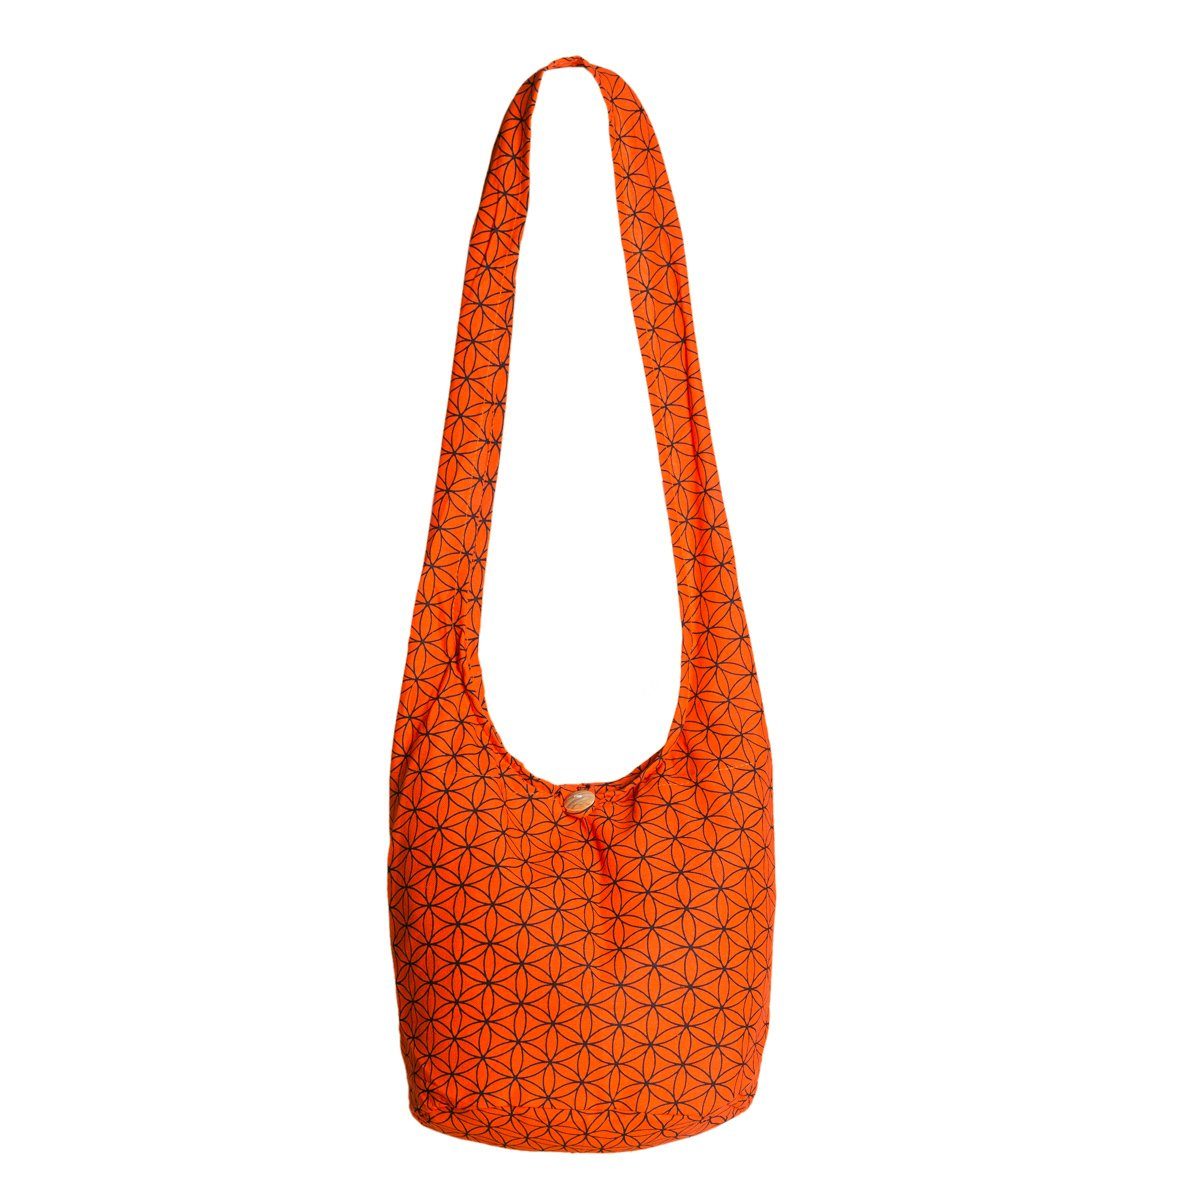 PANASIAM Schultertasche Geometrix Schulterbeutel aus 100% Baumwolle praktische Umhängetasche, In 2 Größen Beuteltasche auch als Wickeltasche und Handtasche geeignet Lebensblume. orange